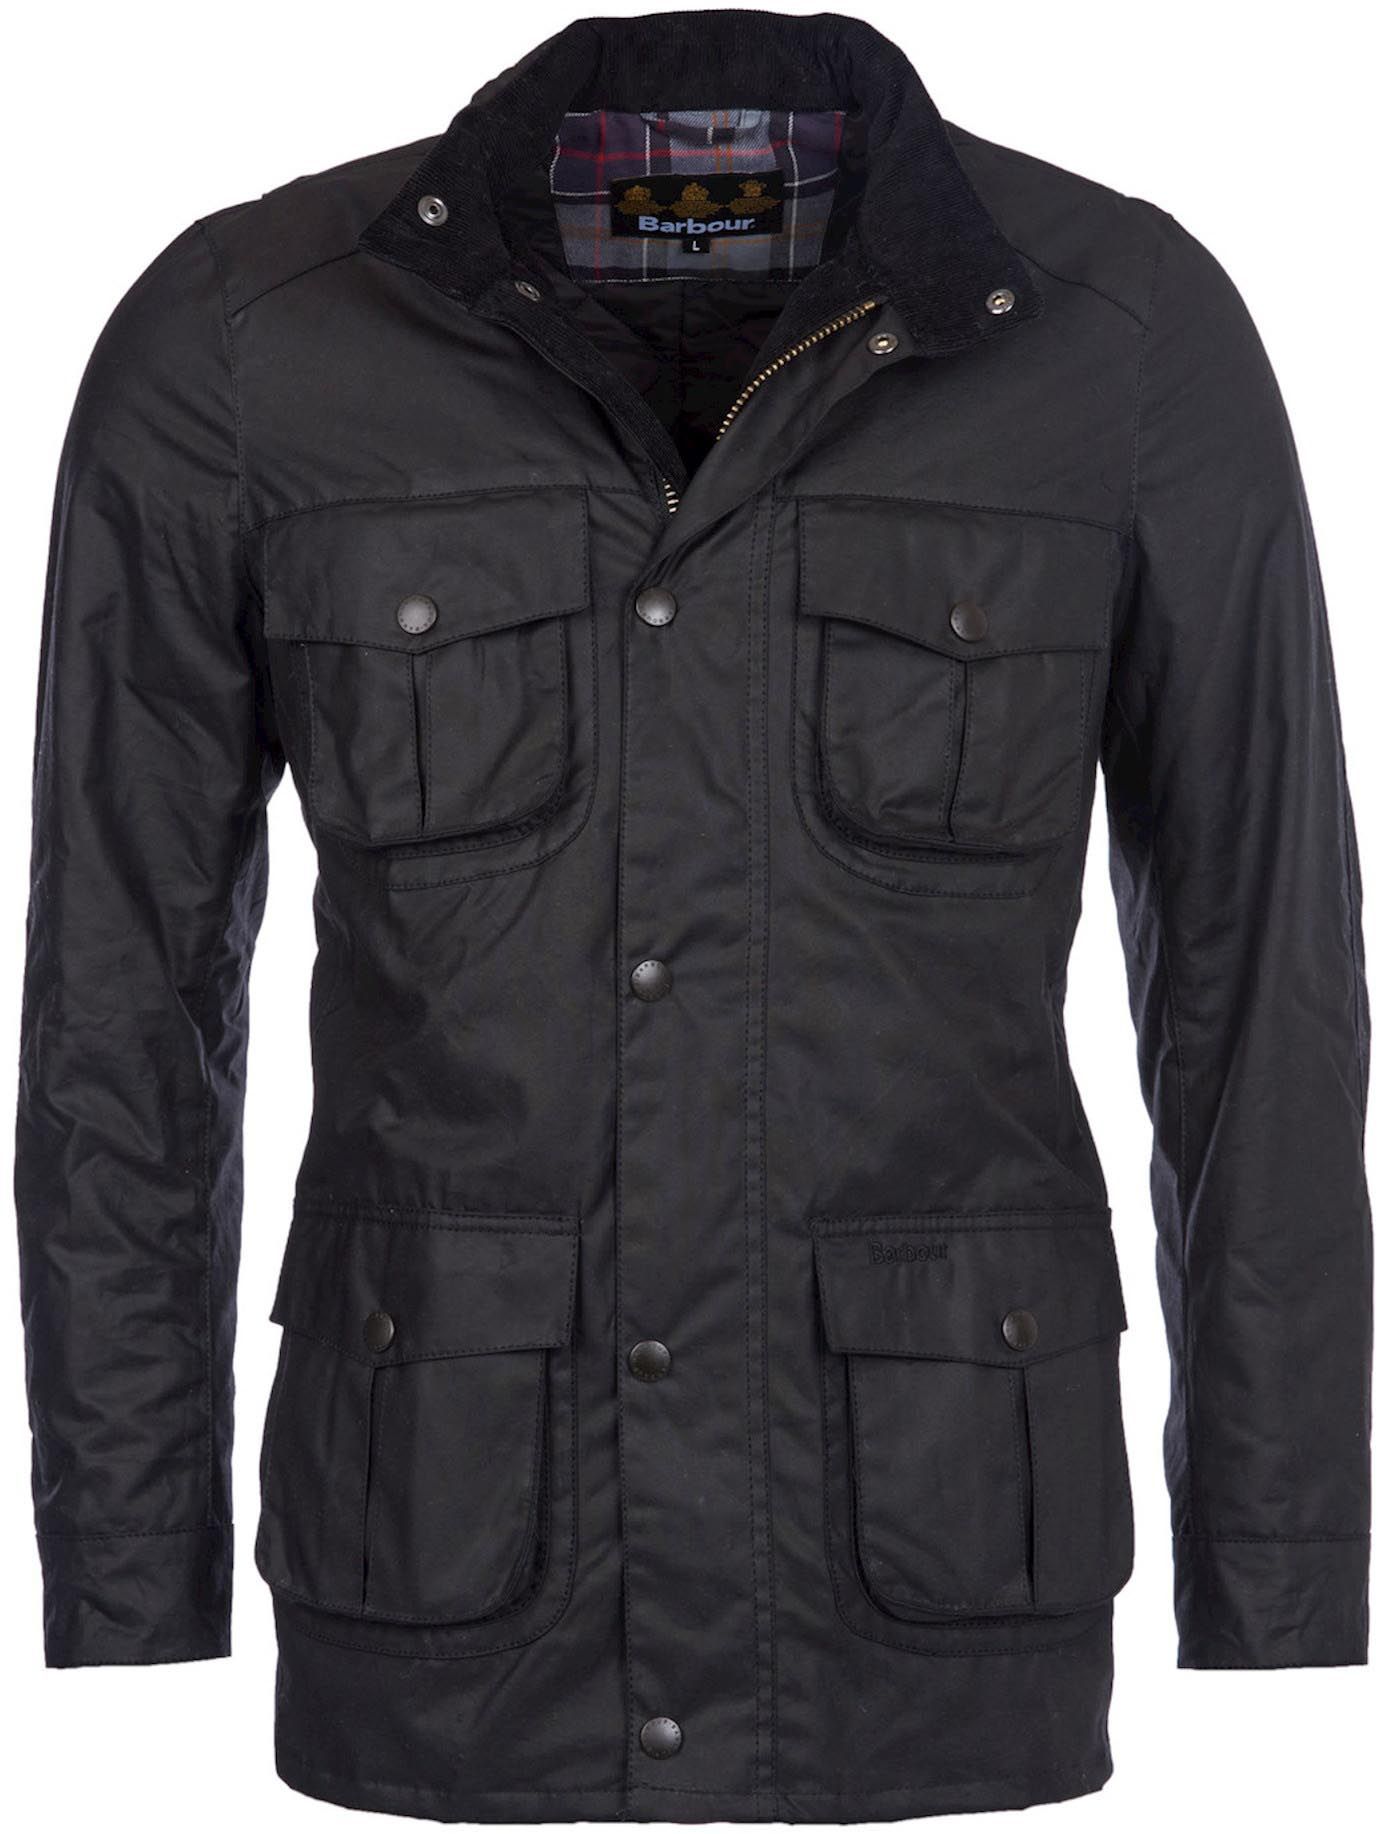 Barbour Wax Jacket Corbridge Black size M